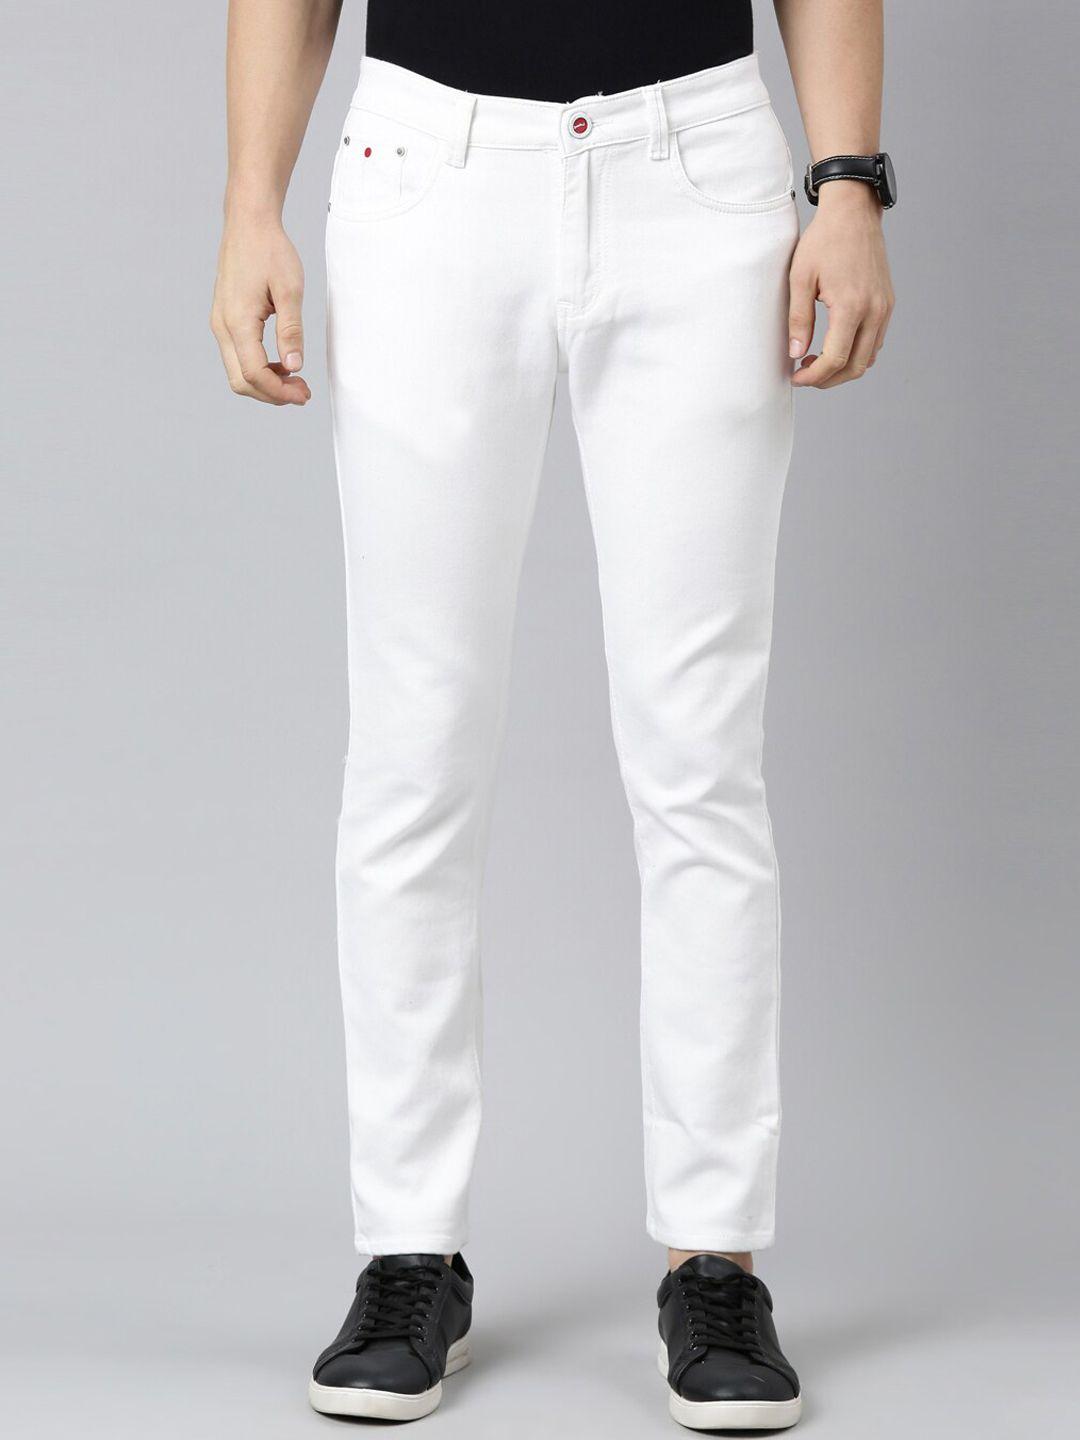 cinocci men white stretchable cotton jeans